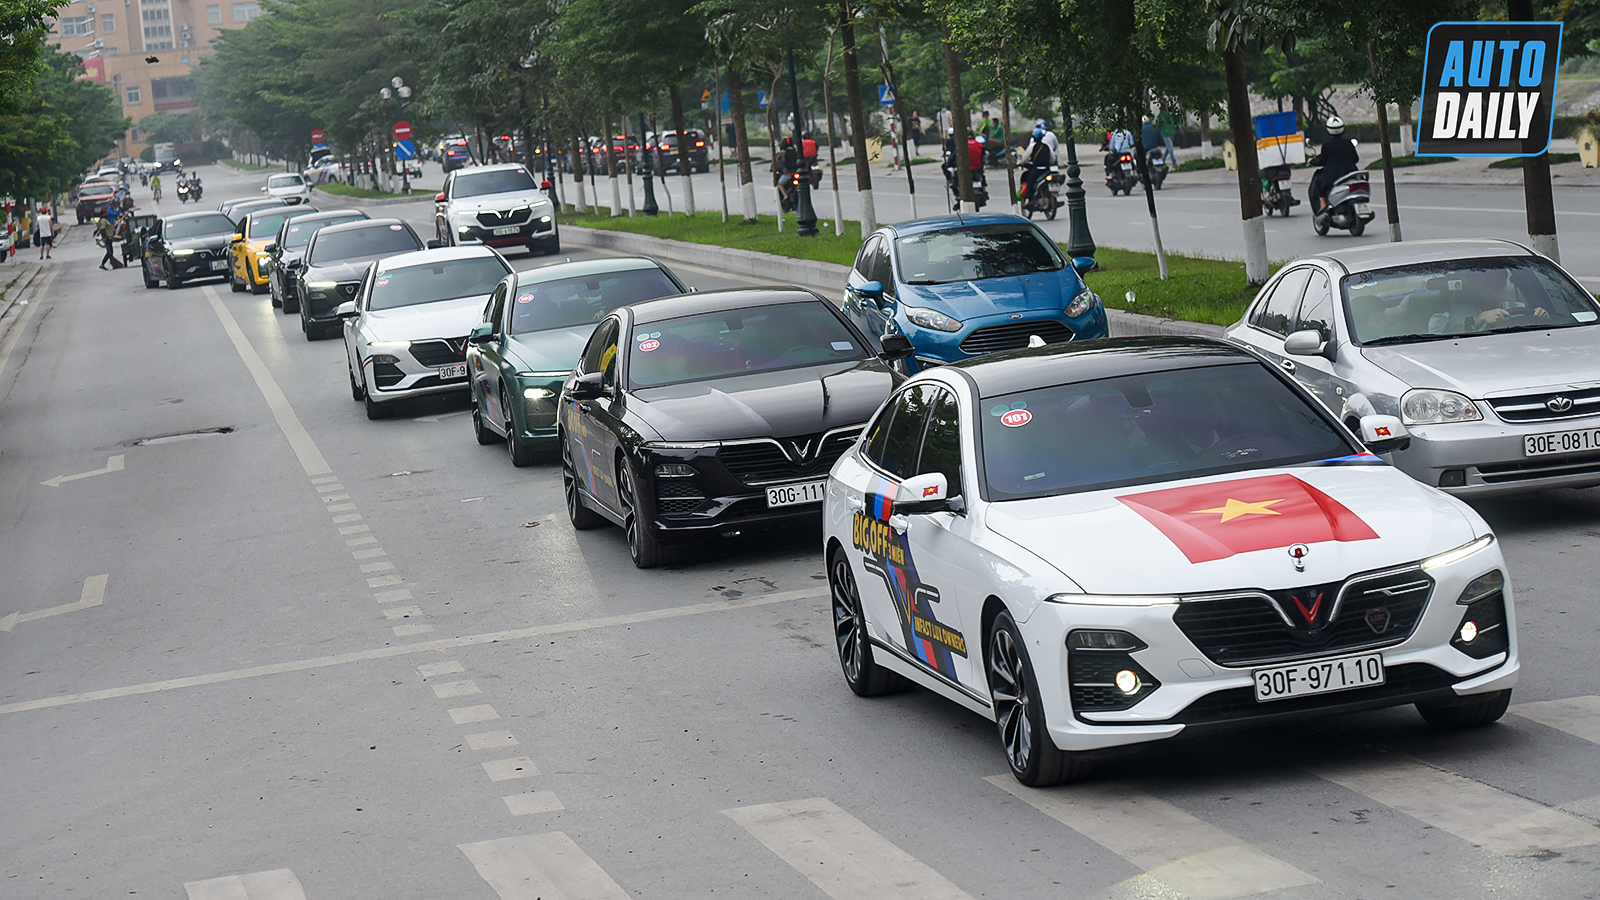 Chùm ảnh gần 60 xe VinFast Lux tại Hà Nội xuất phát Offline 3 miền tại Hội An dsc-6252-copy.jpg